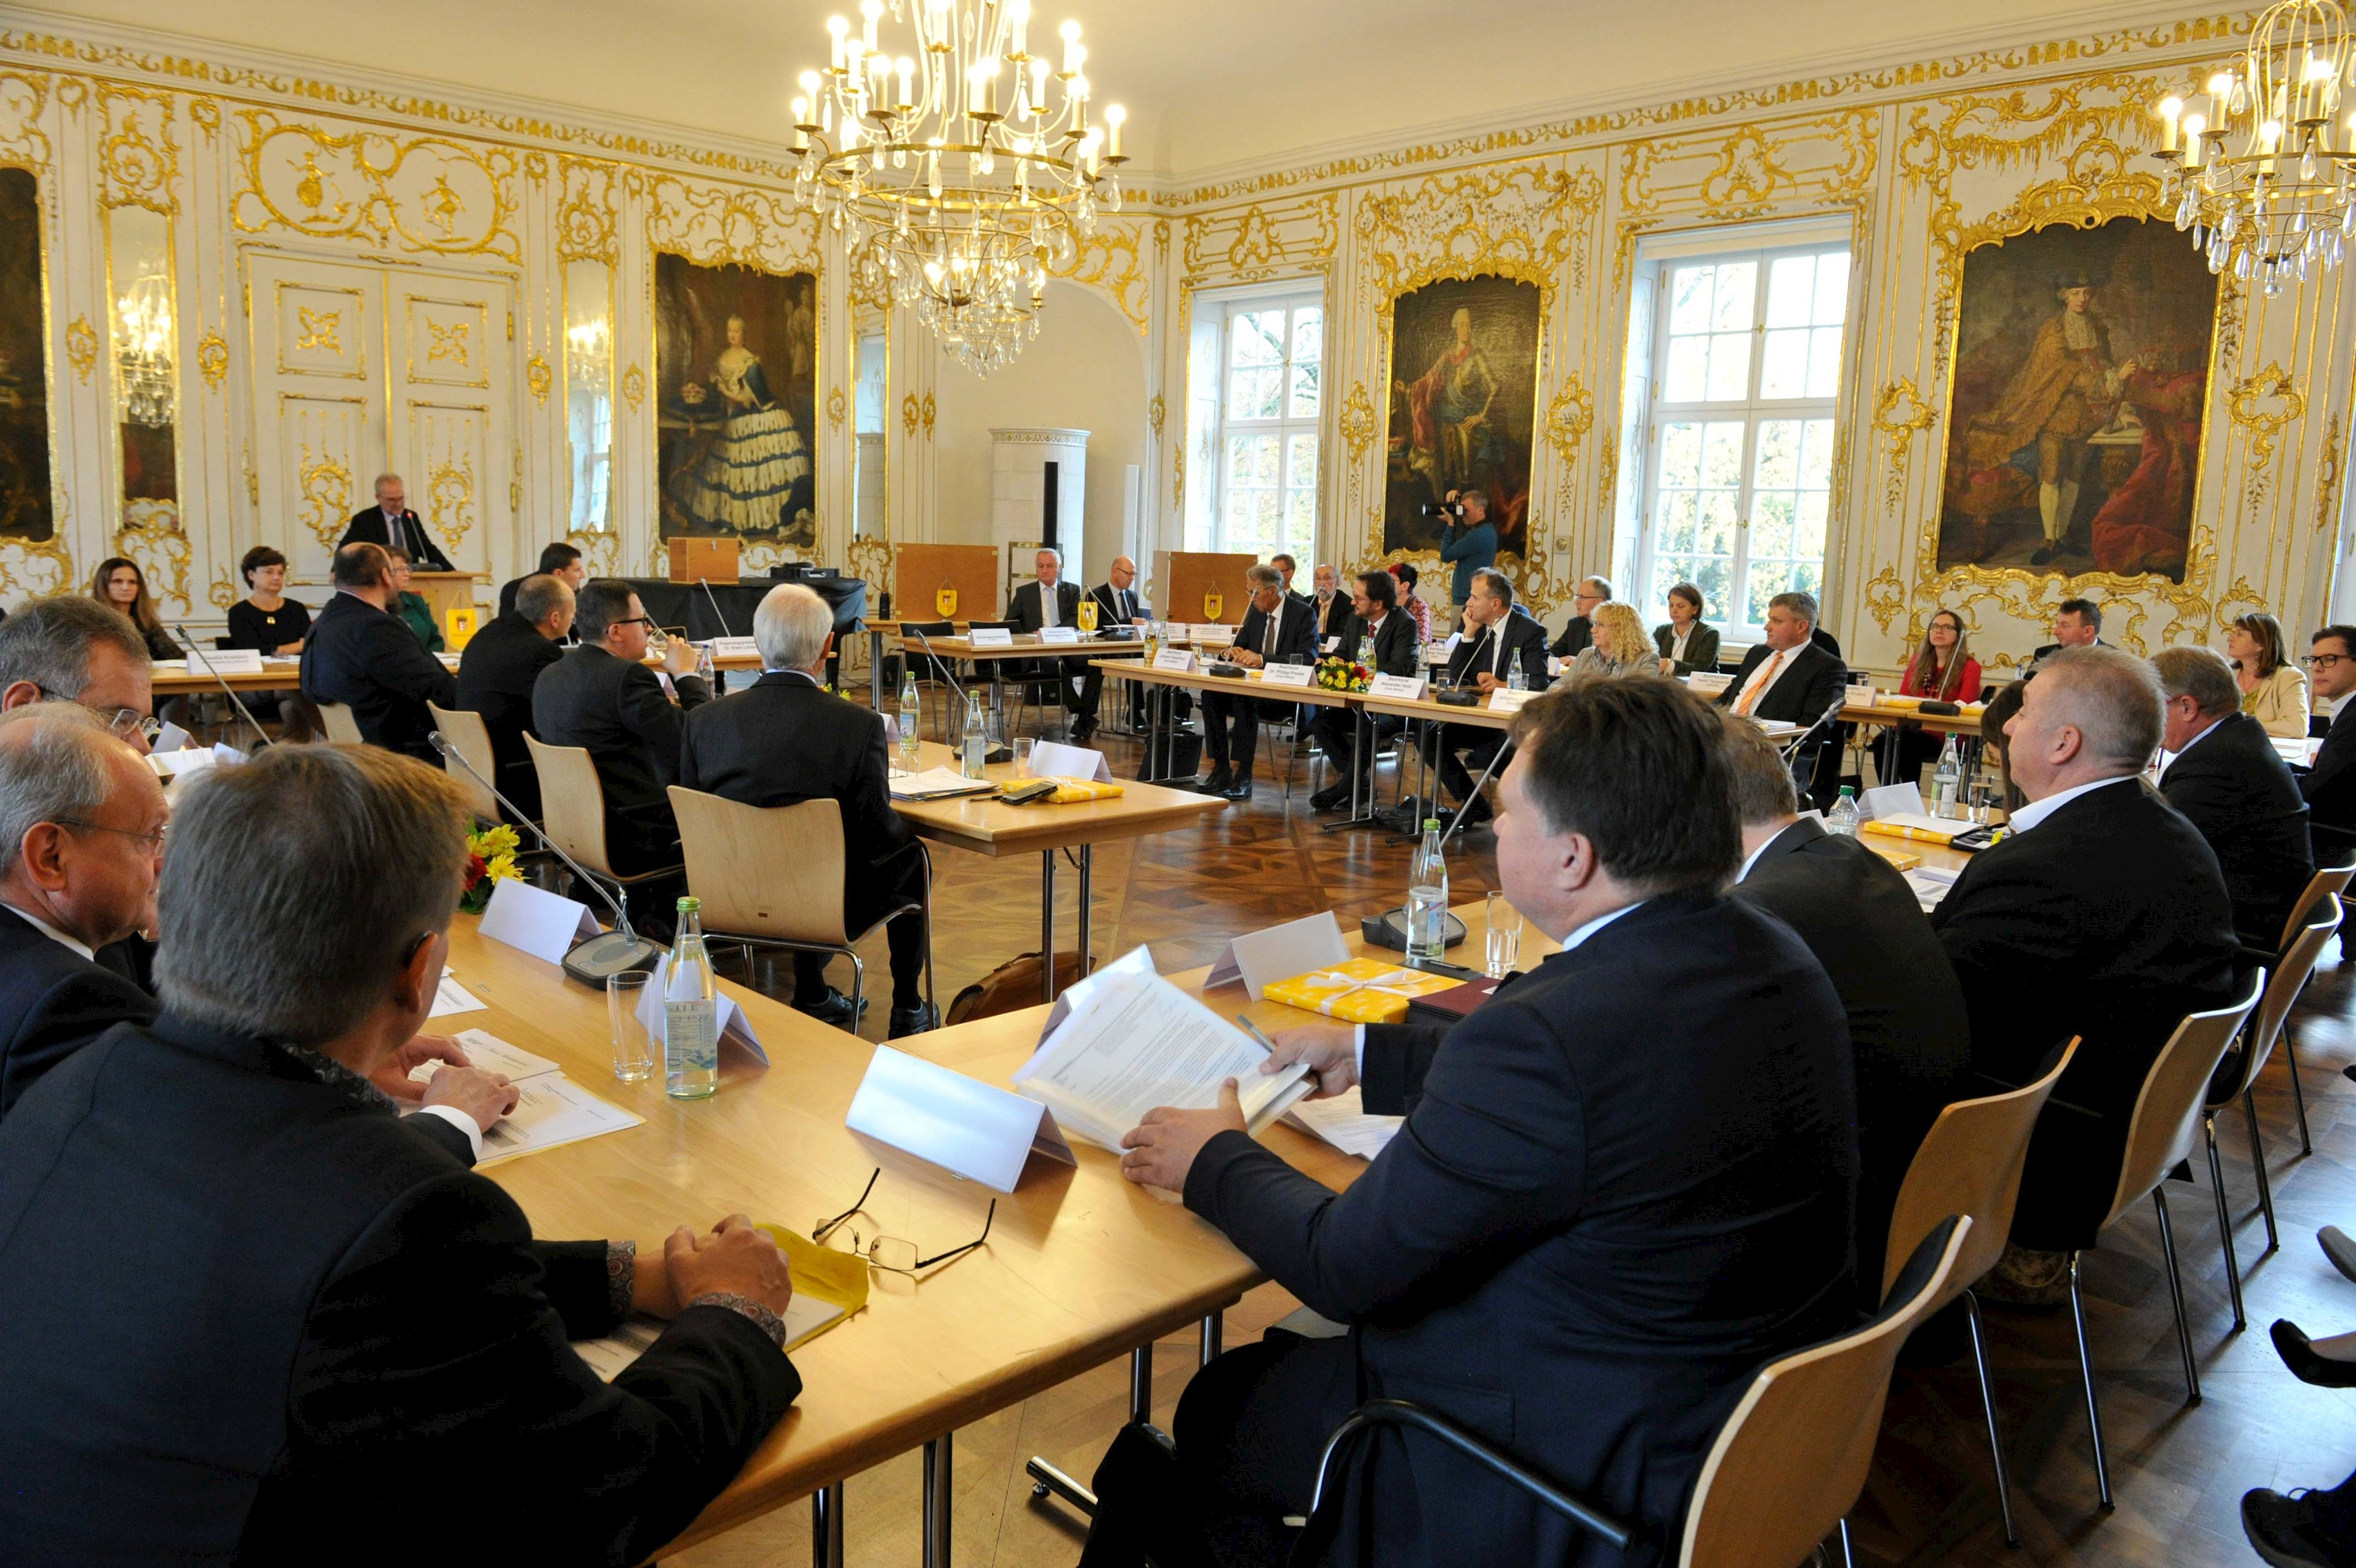 Mit 36 Bezirkrätinnen und Bezirksräten war der Rokoko-Saal der Regierung von Schwaben gut gefüllt.